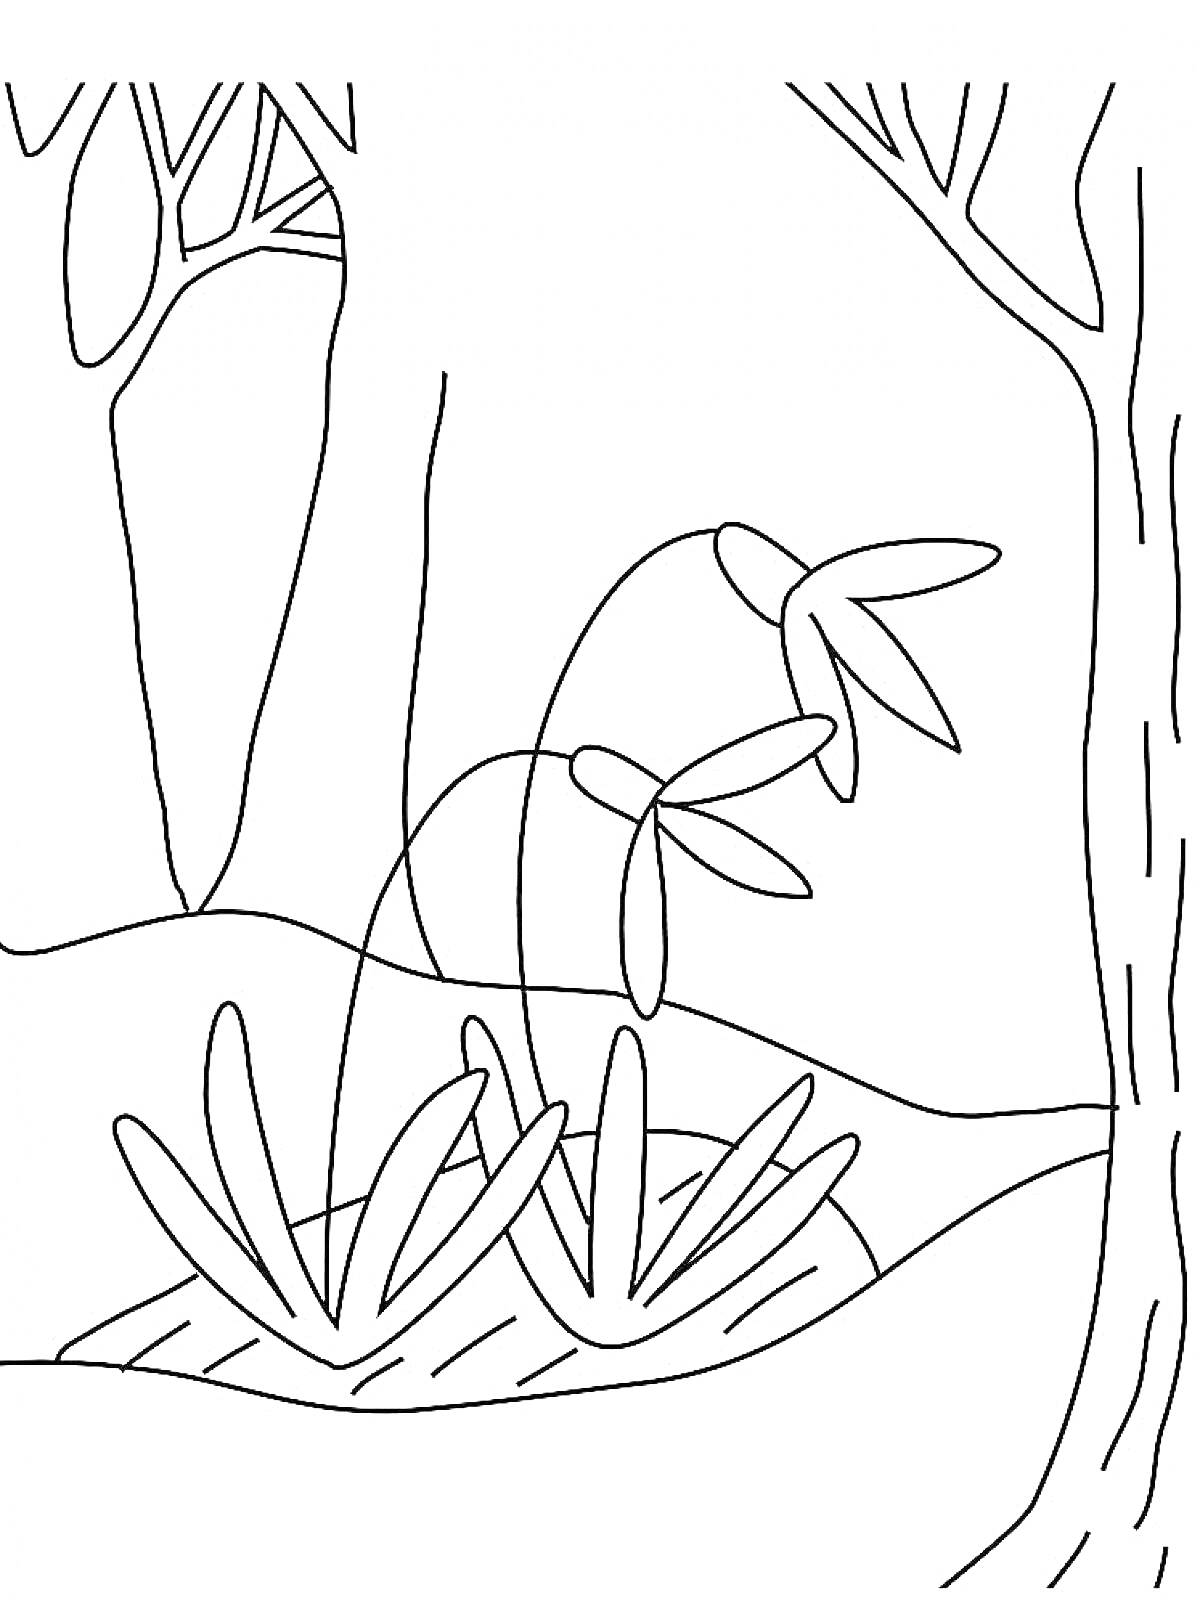 Раскраска Подснежник в лесу, деревья, кустарники и трава на переднем плане